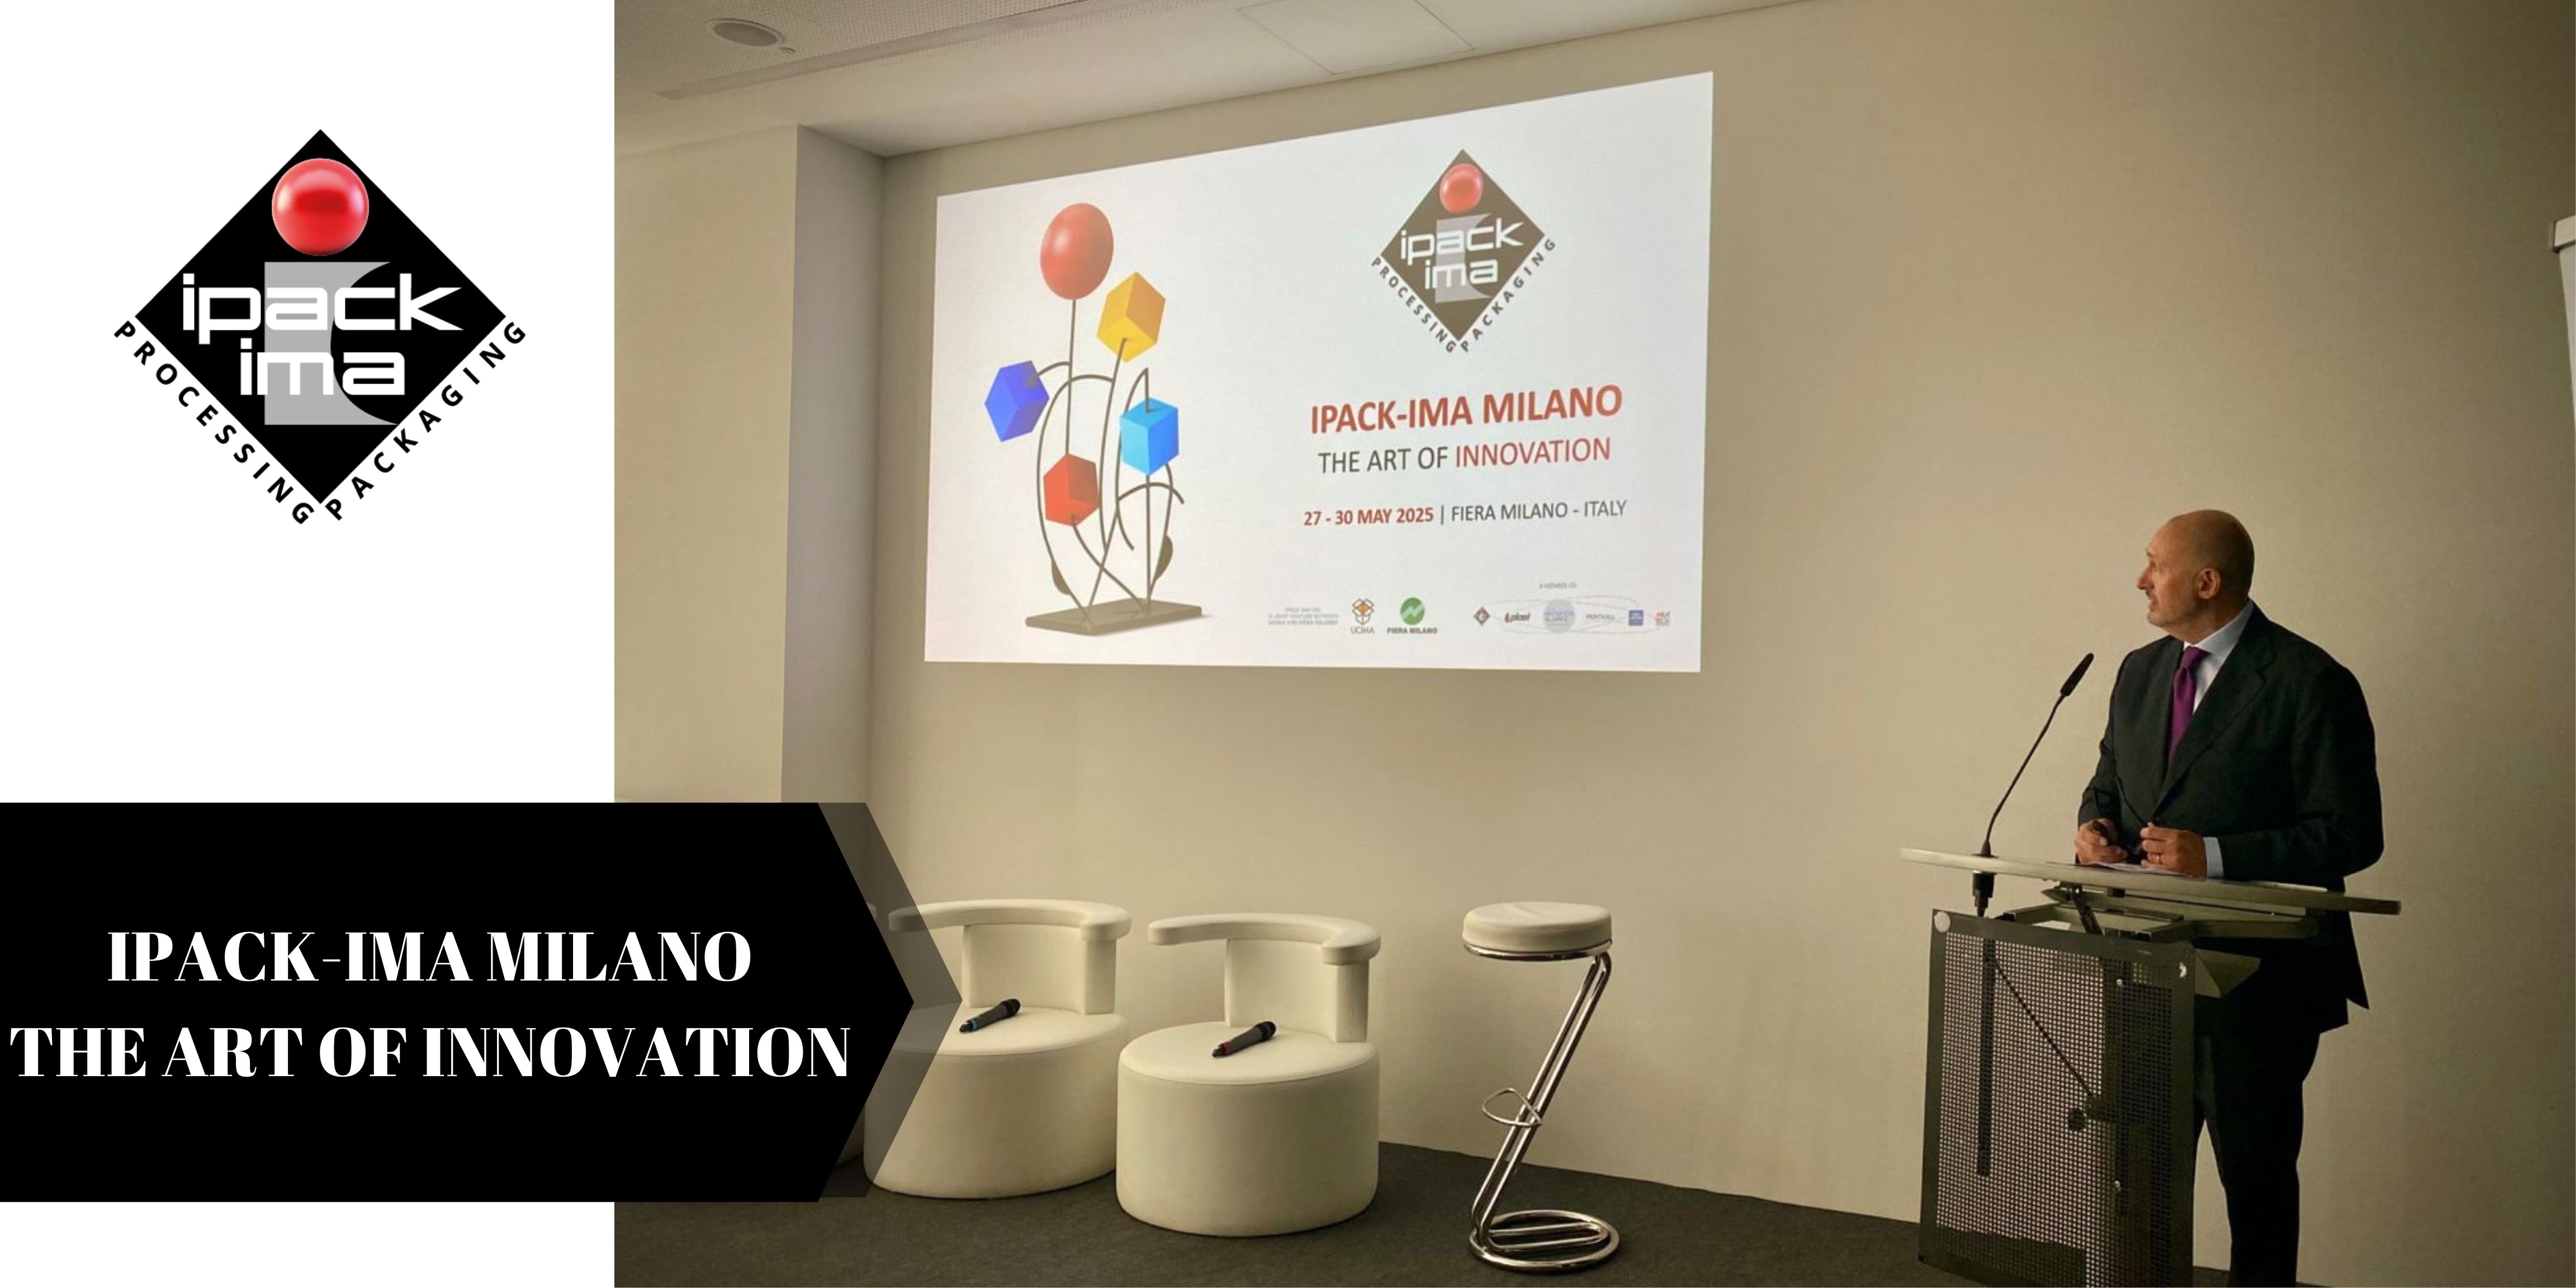 UCIMA ve IPACK-IMA MILANO 2025: Küresel Teknolojik Mükemmellik İnovasyonla Buluşuyor